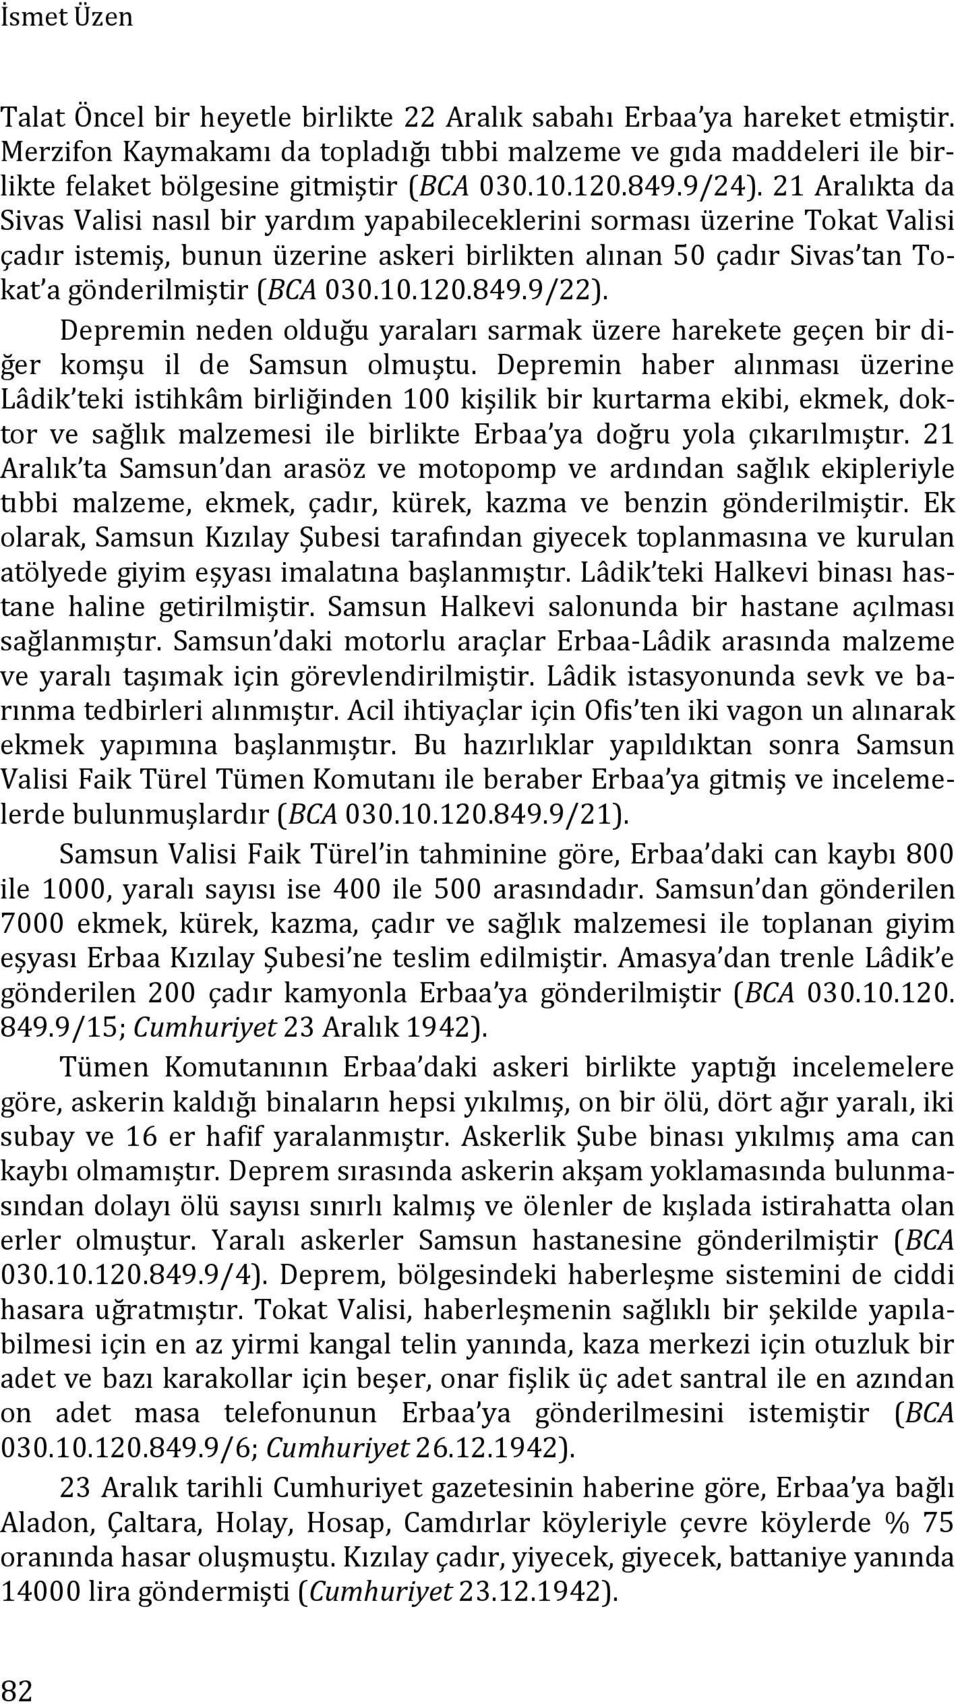 21 Aralıkta da Sivas Valisi nasıl bir yardım yapabileceklerini sorması üzerine Tokat Valisi çadır istemiş, bunun üzerine askeri birlikten alınan 50 çadır Sivas tan Tokat a gönderilmiştir (BCA 030.10.